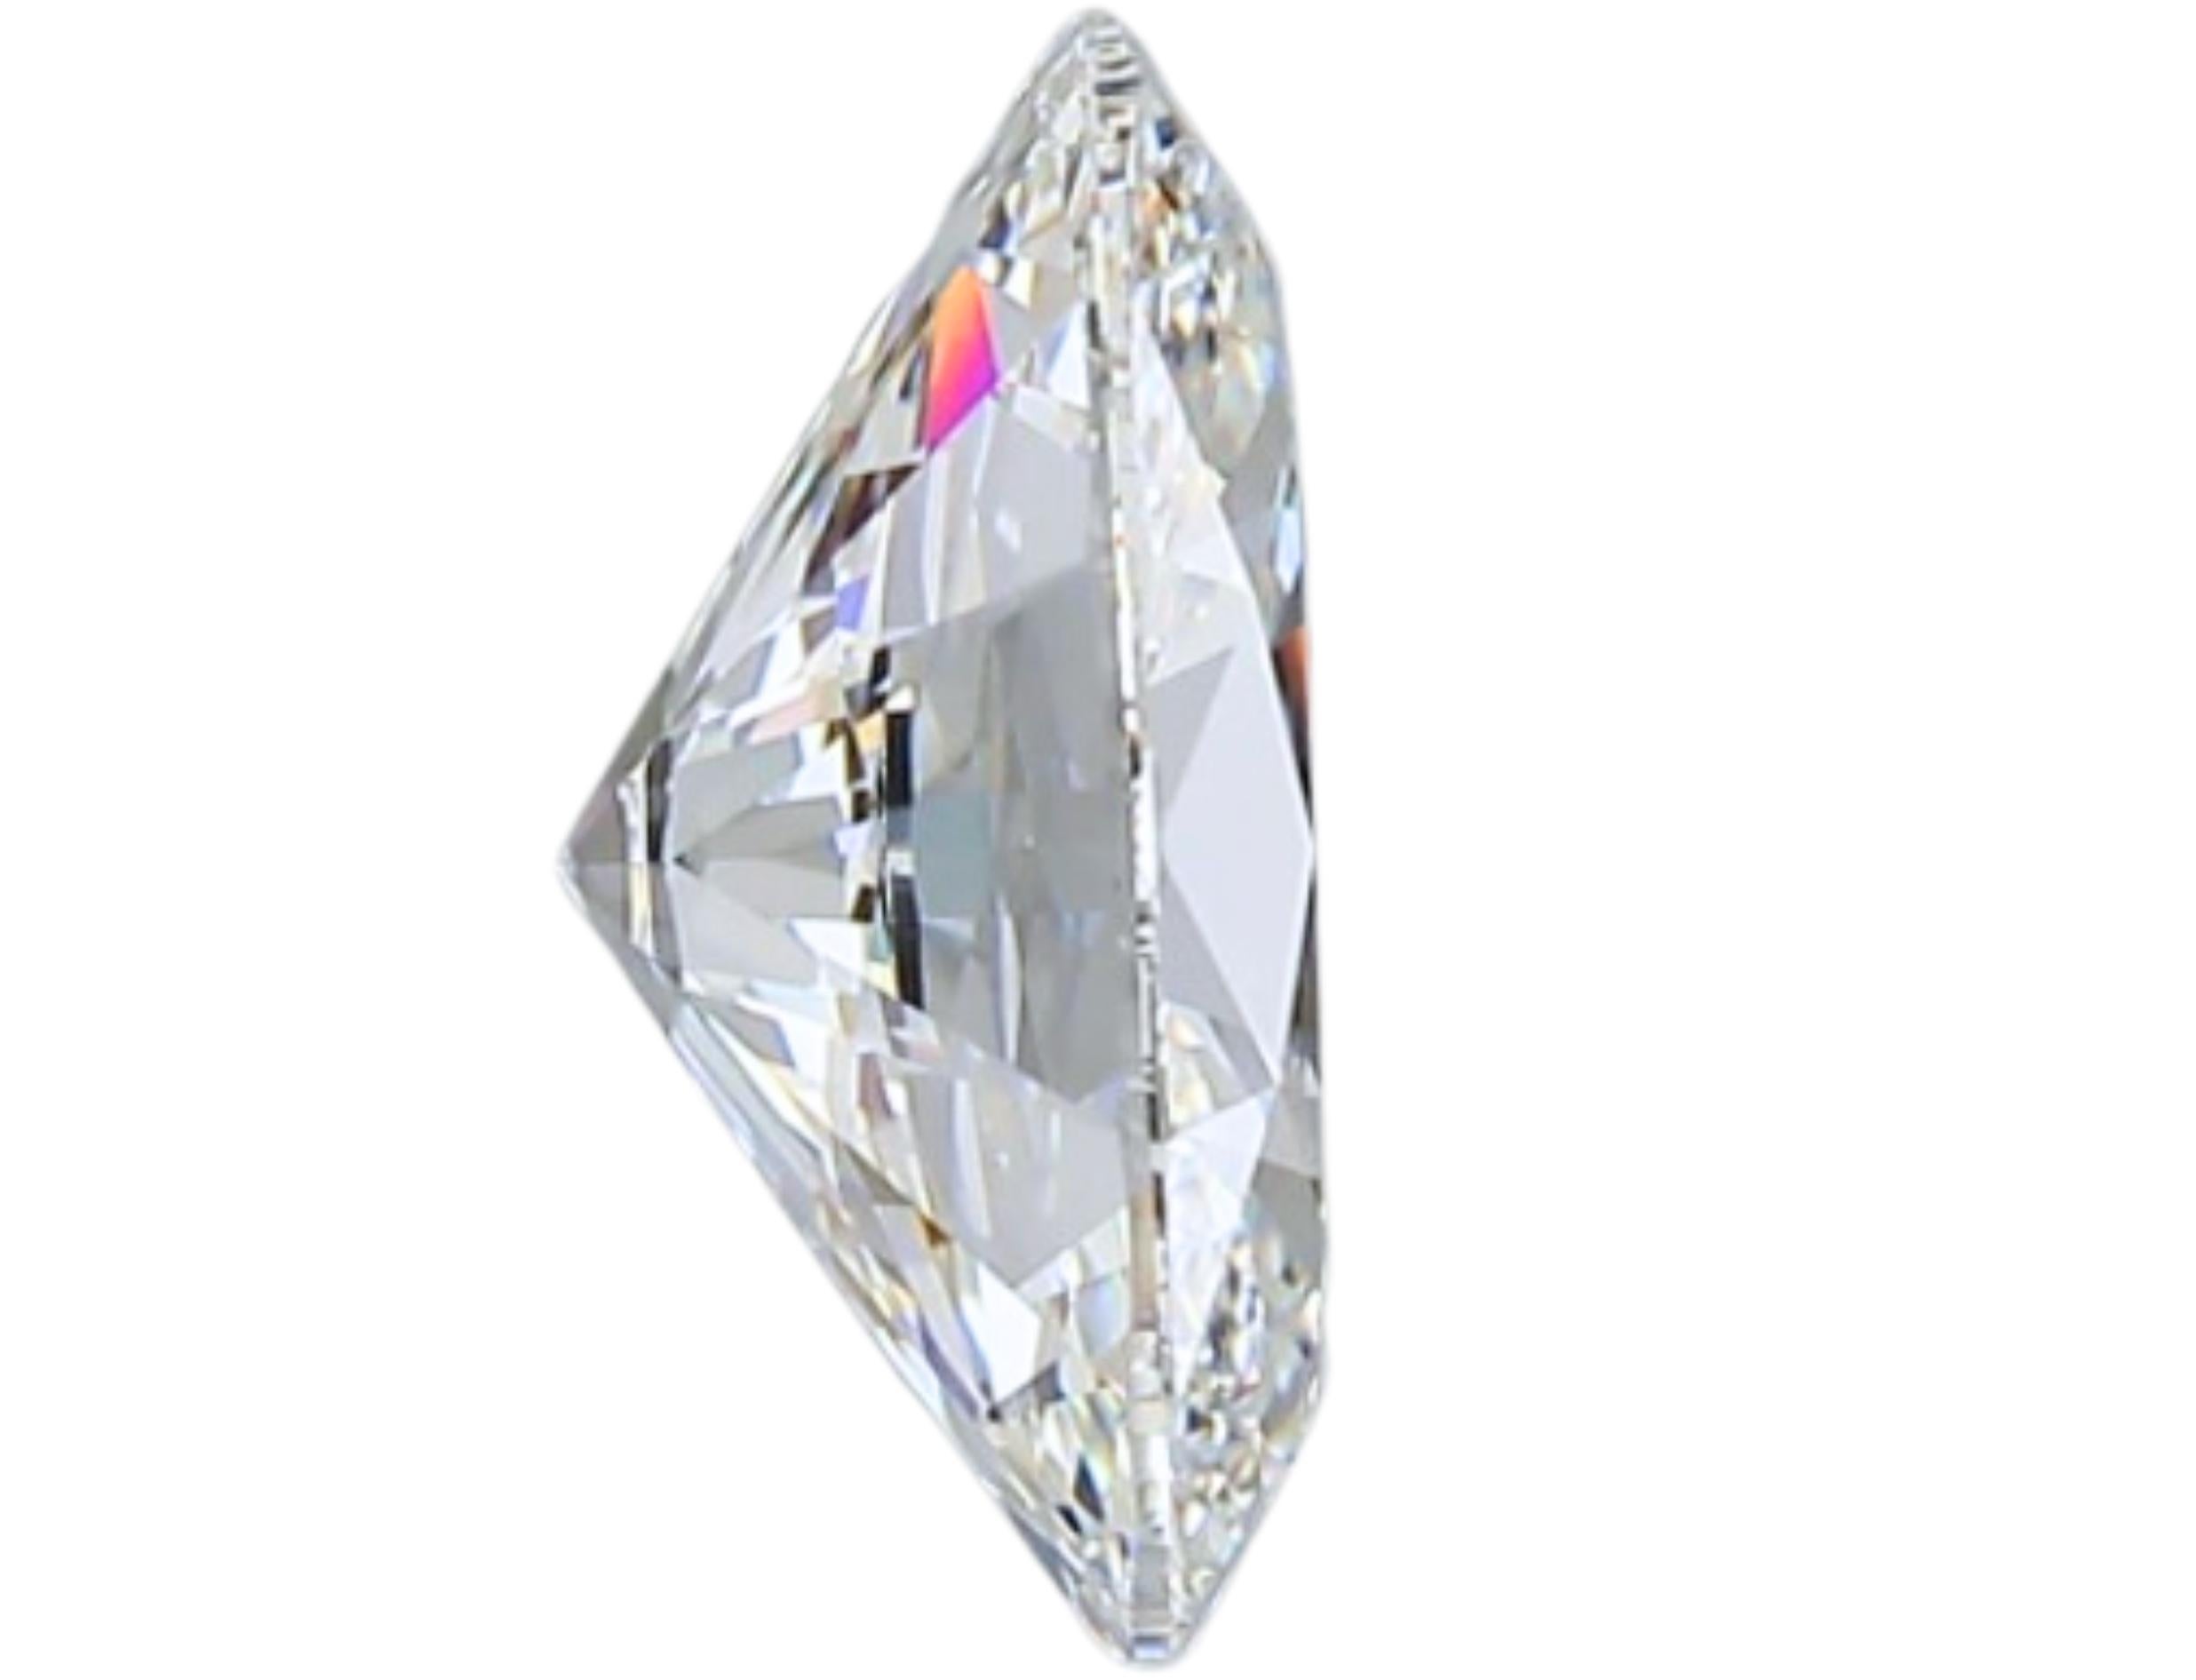 Sparkling 1.73 carat Oval Cut Brilliant Diamond For Sale 1